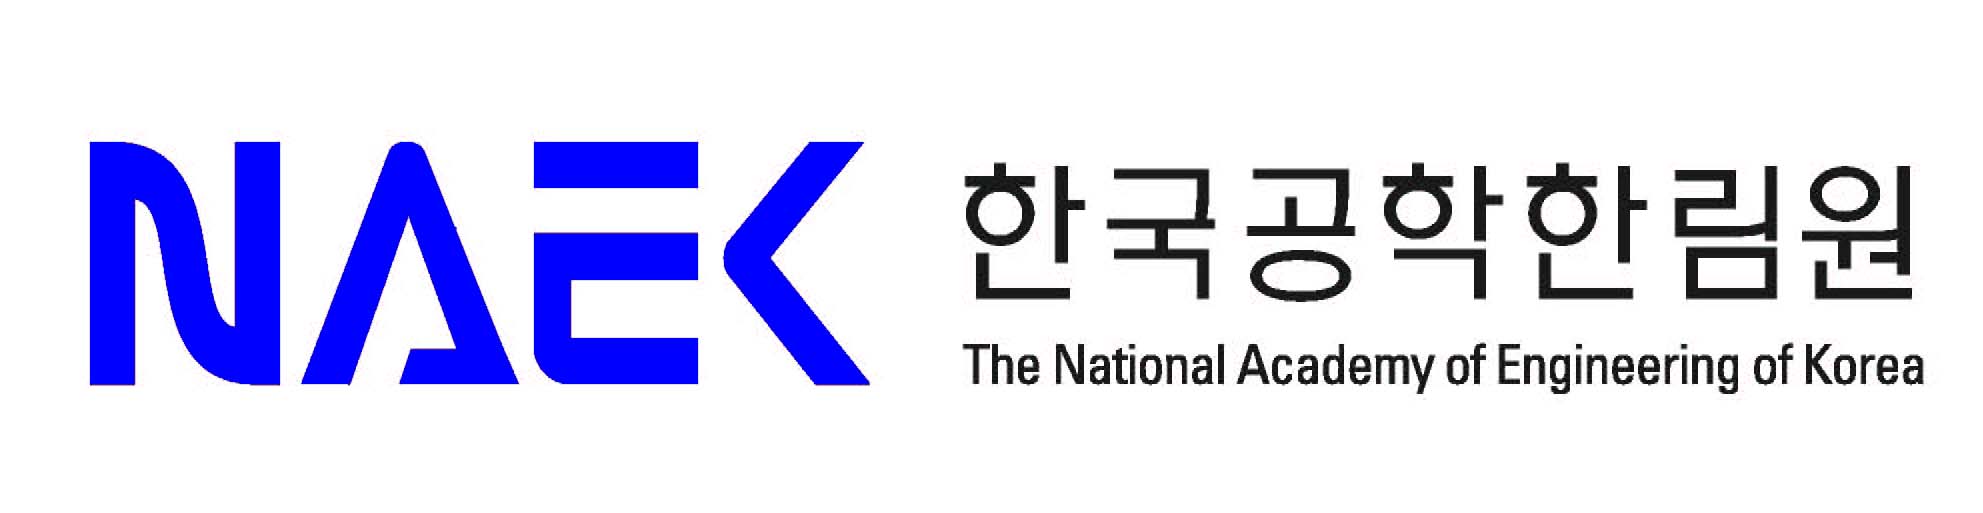 (재)한국공학한림원